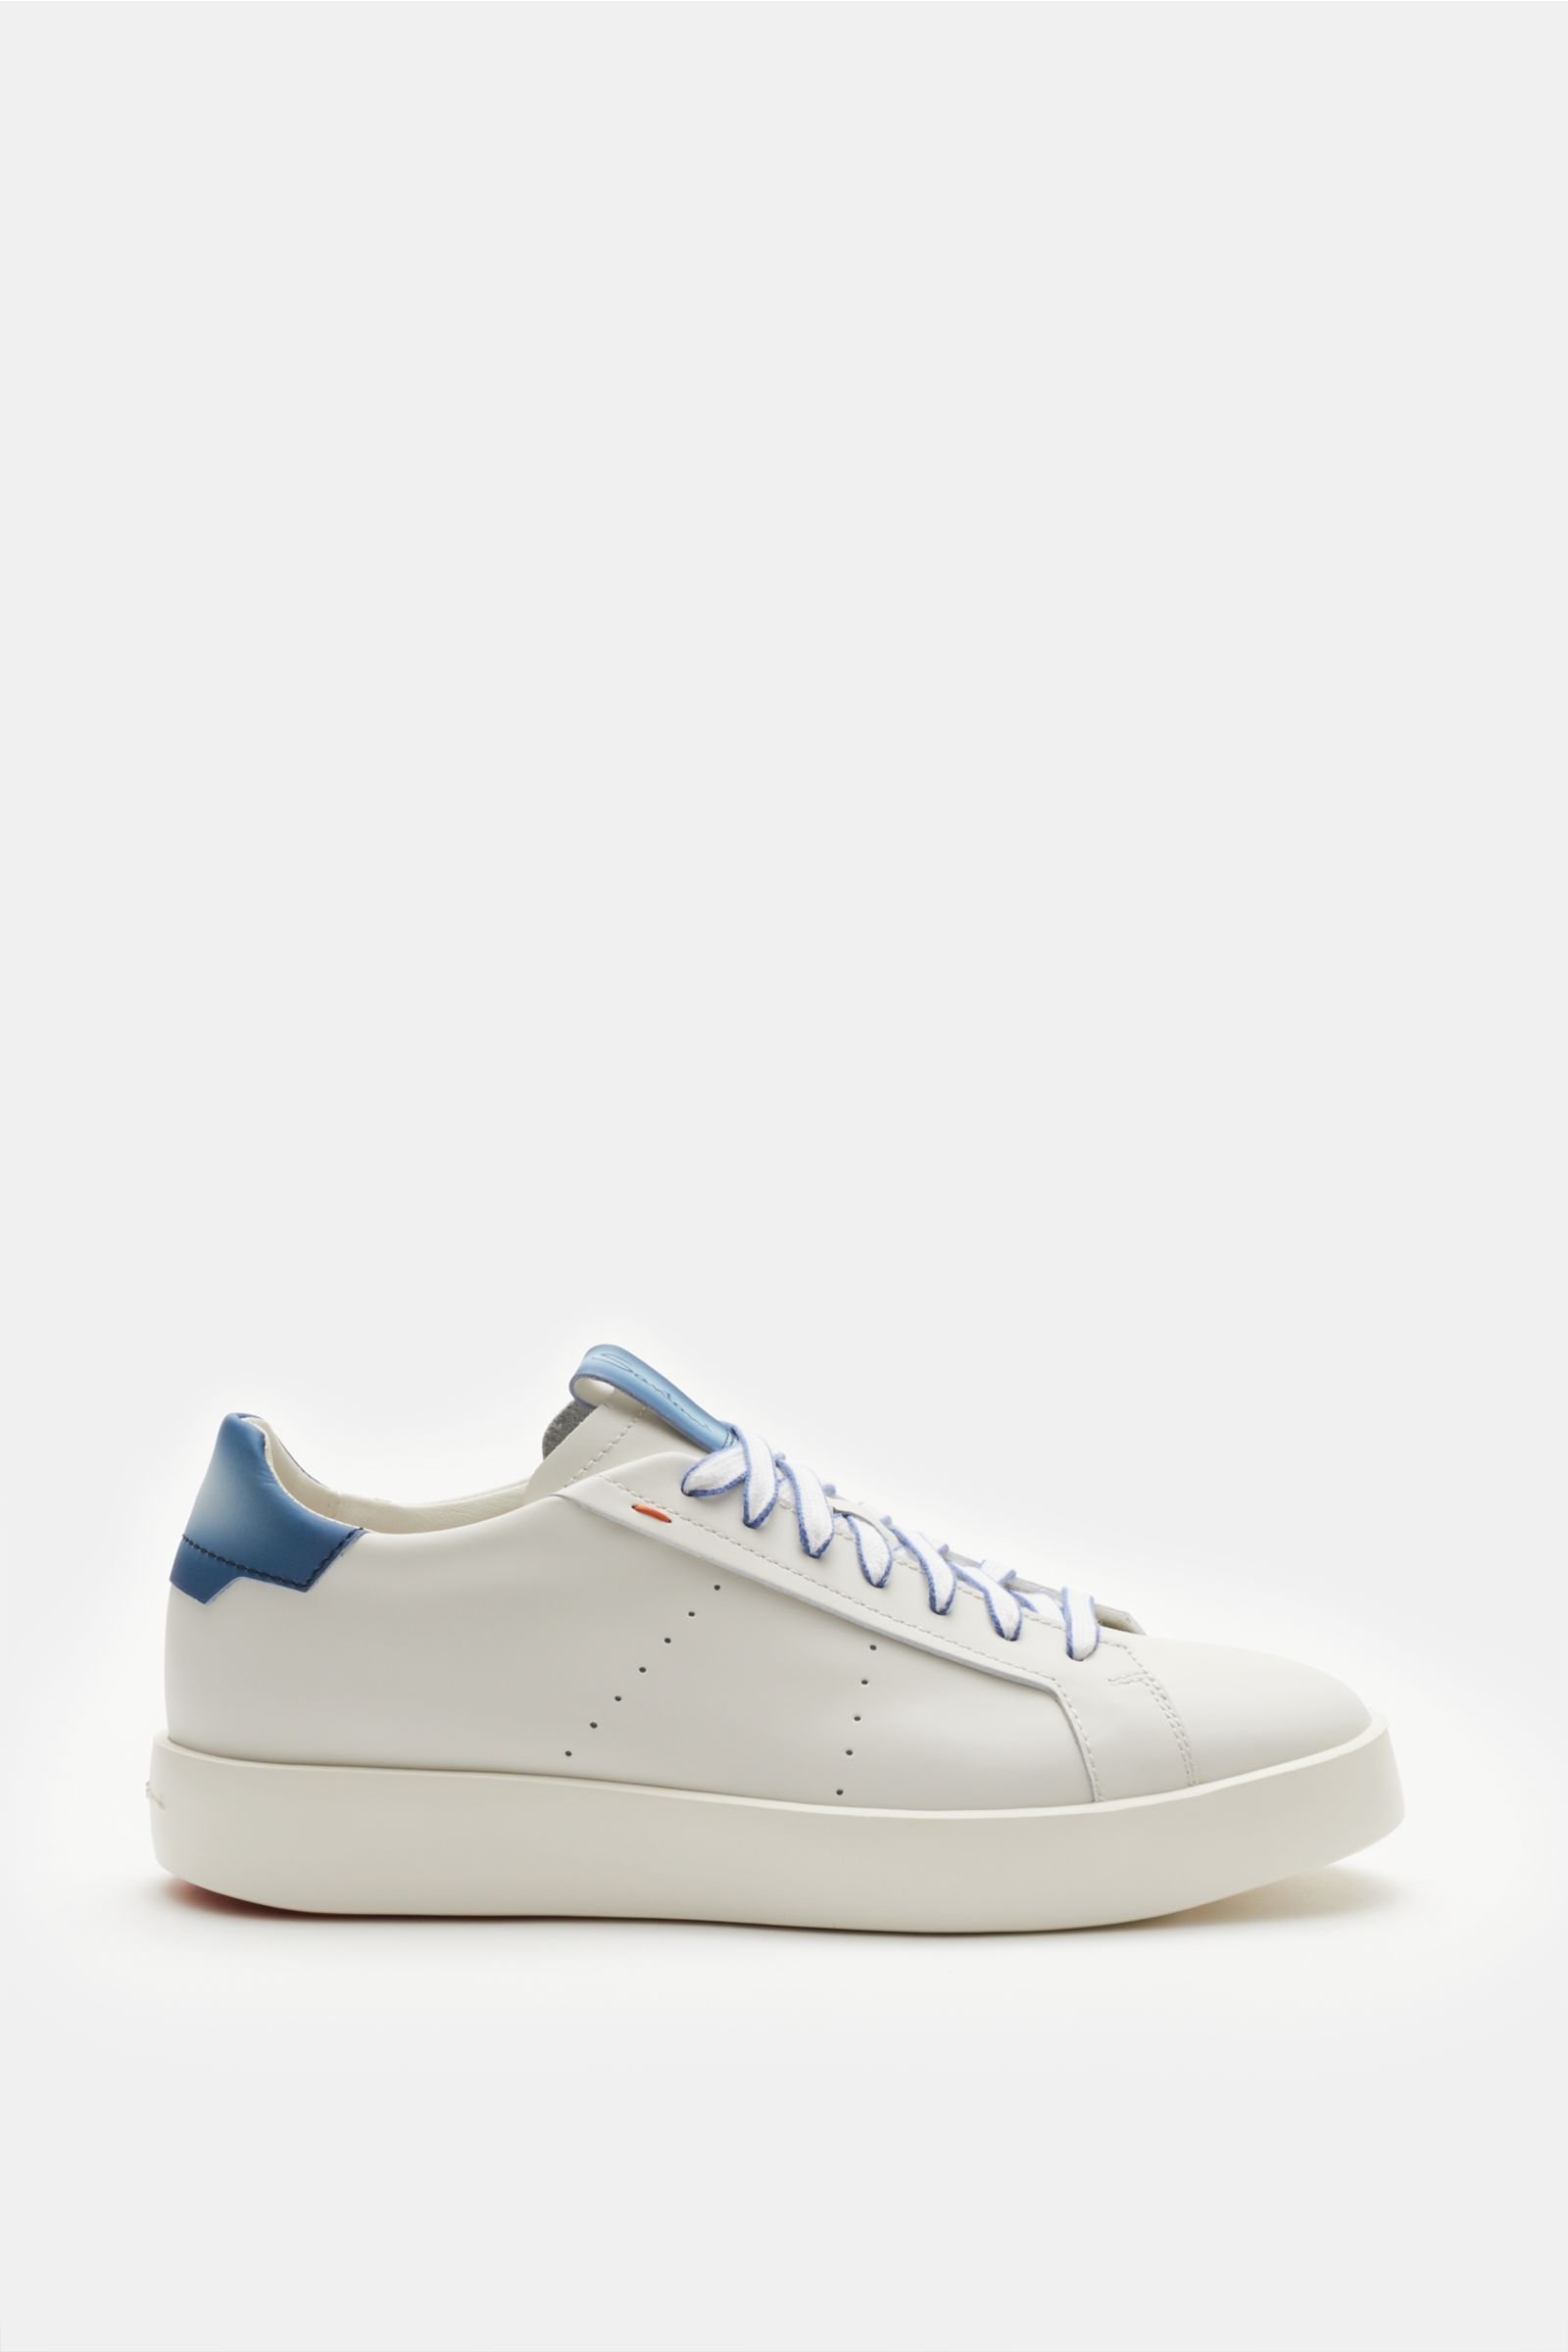 Sneaker weiß/graublau 